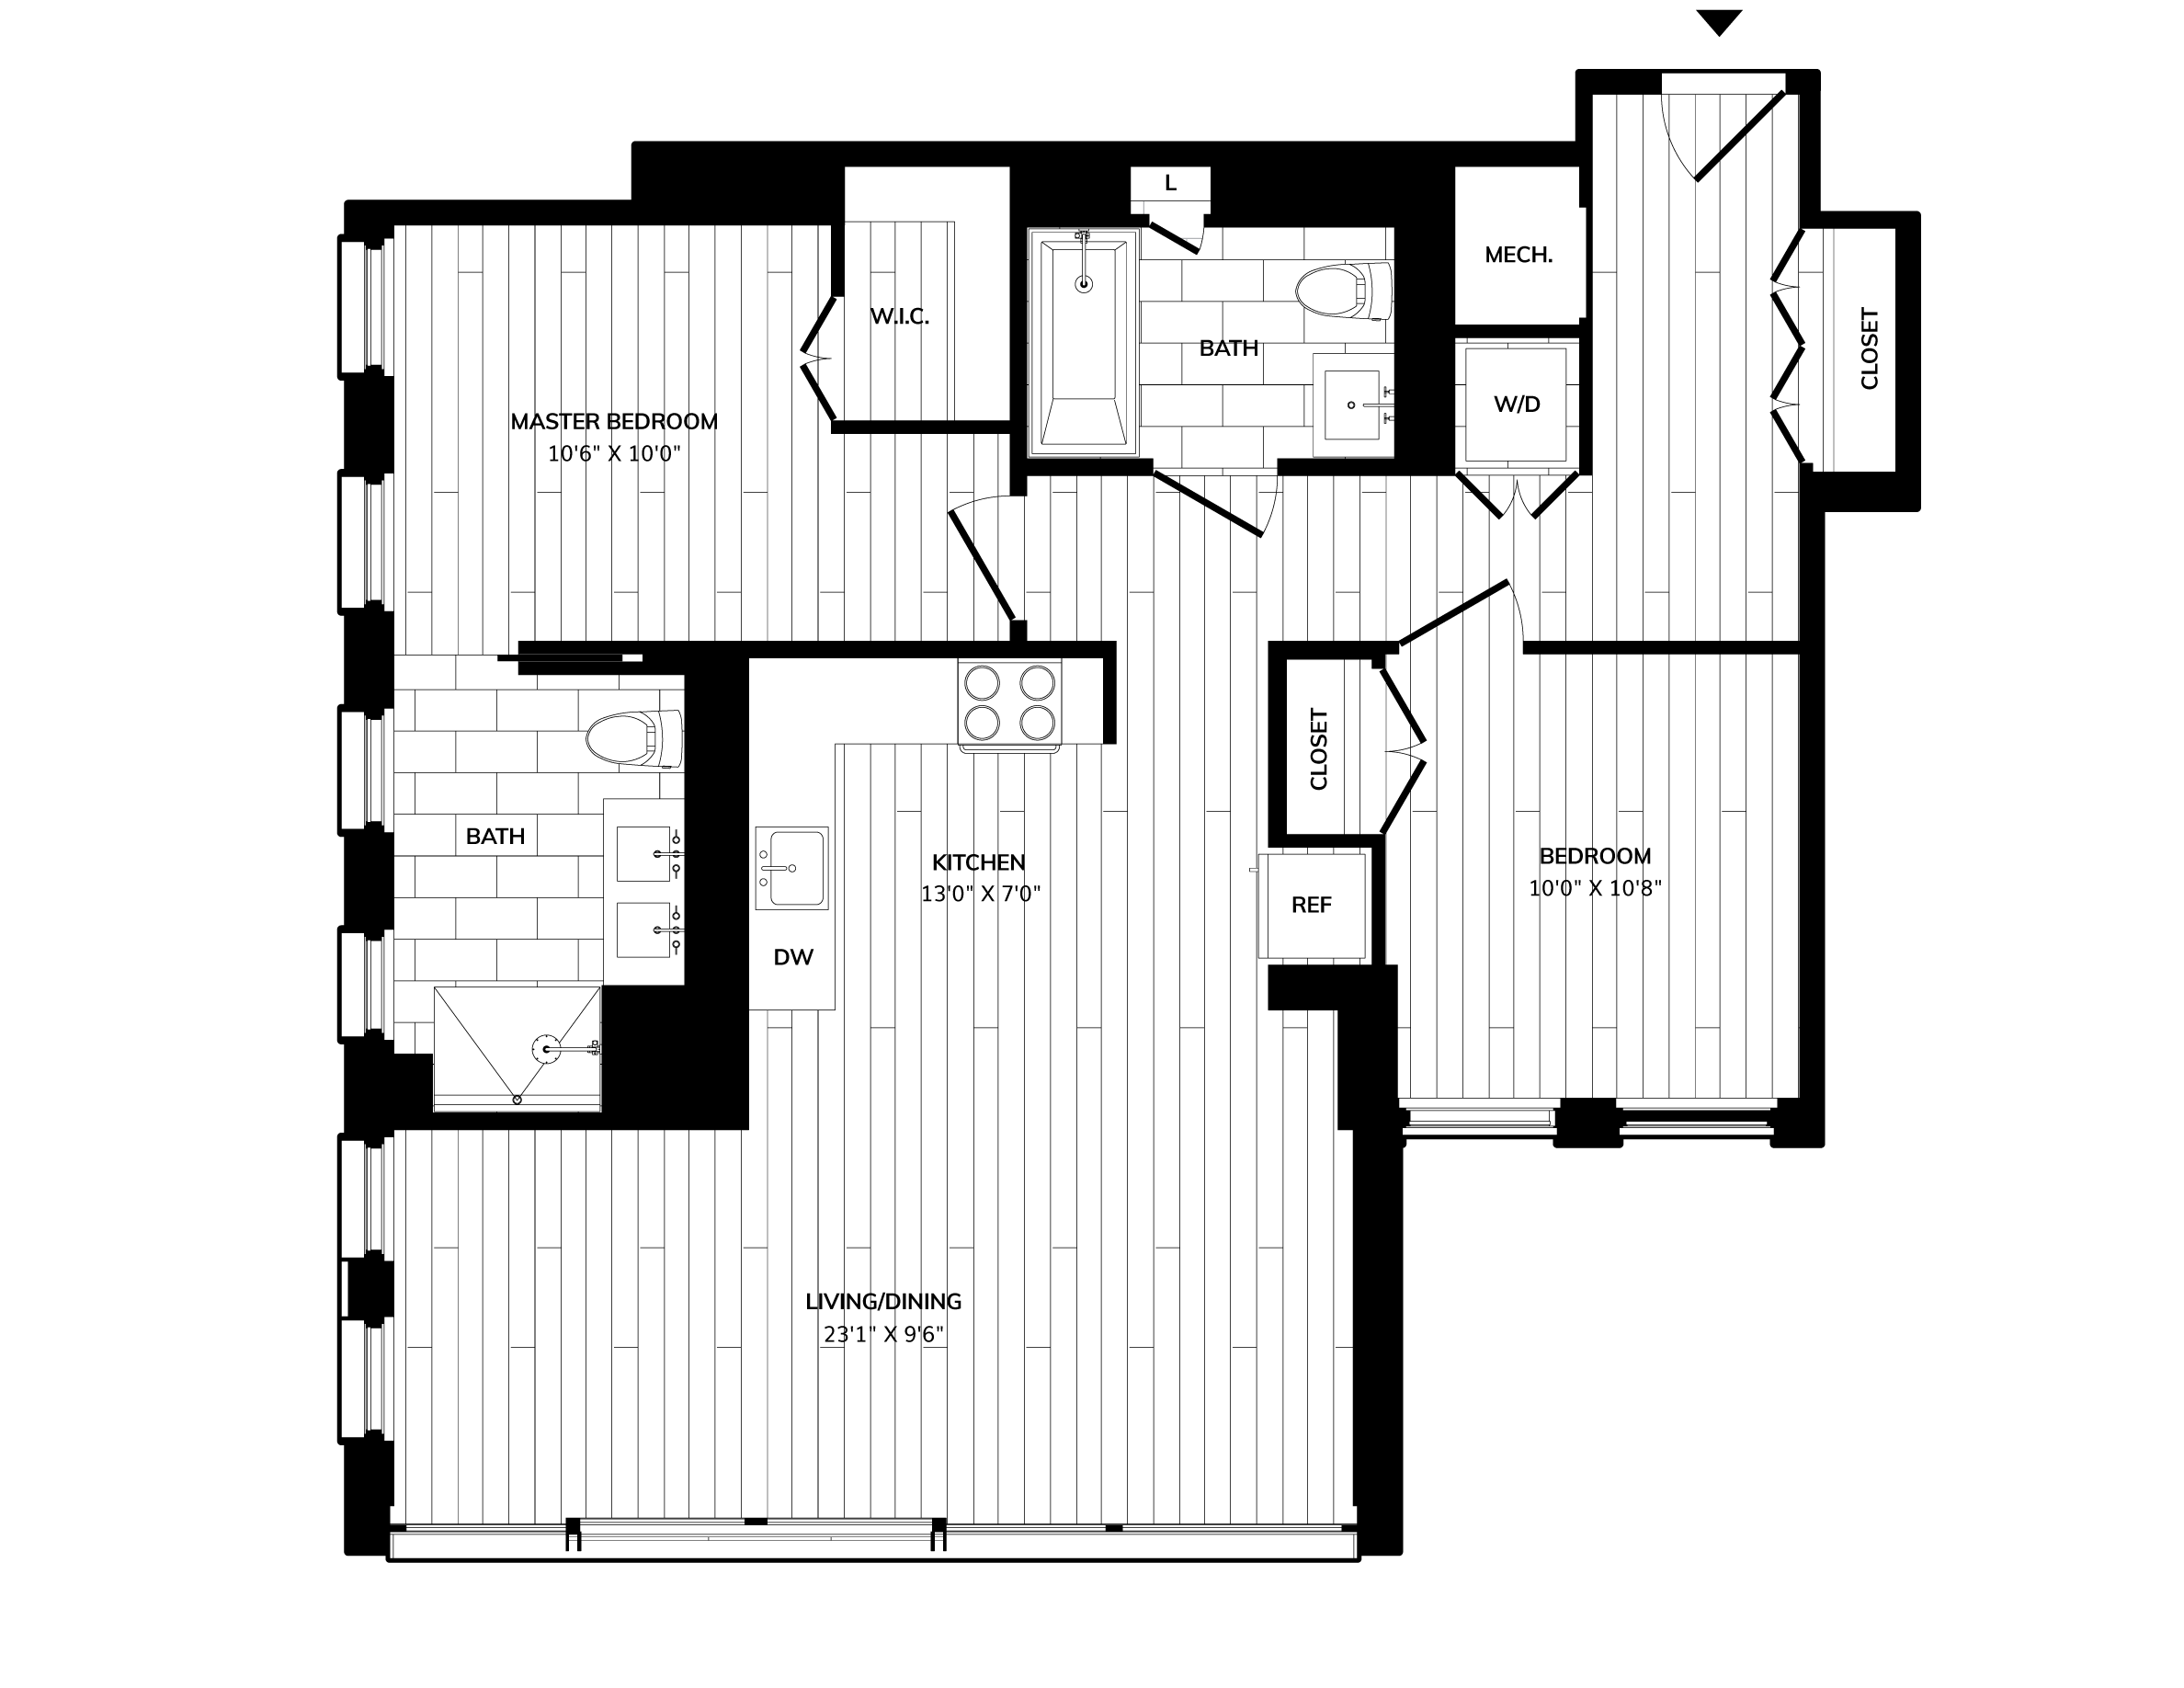 Floorplan image of unit 1009